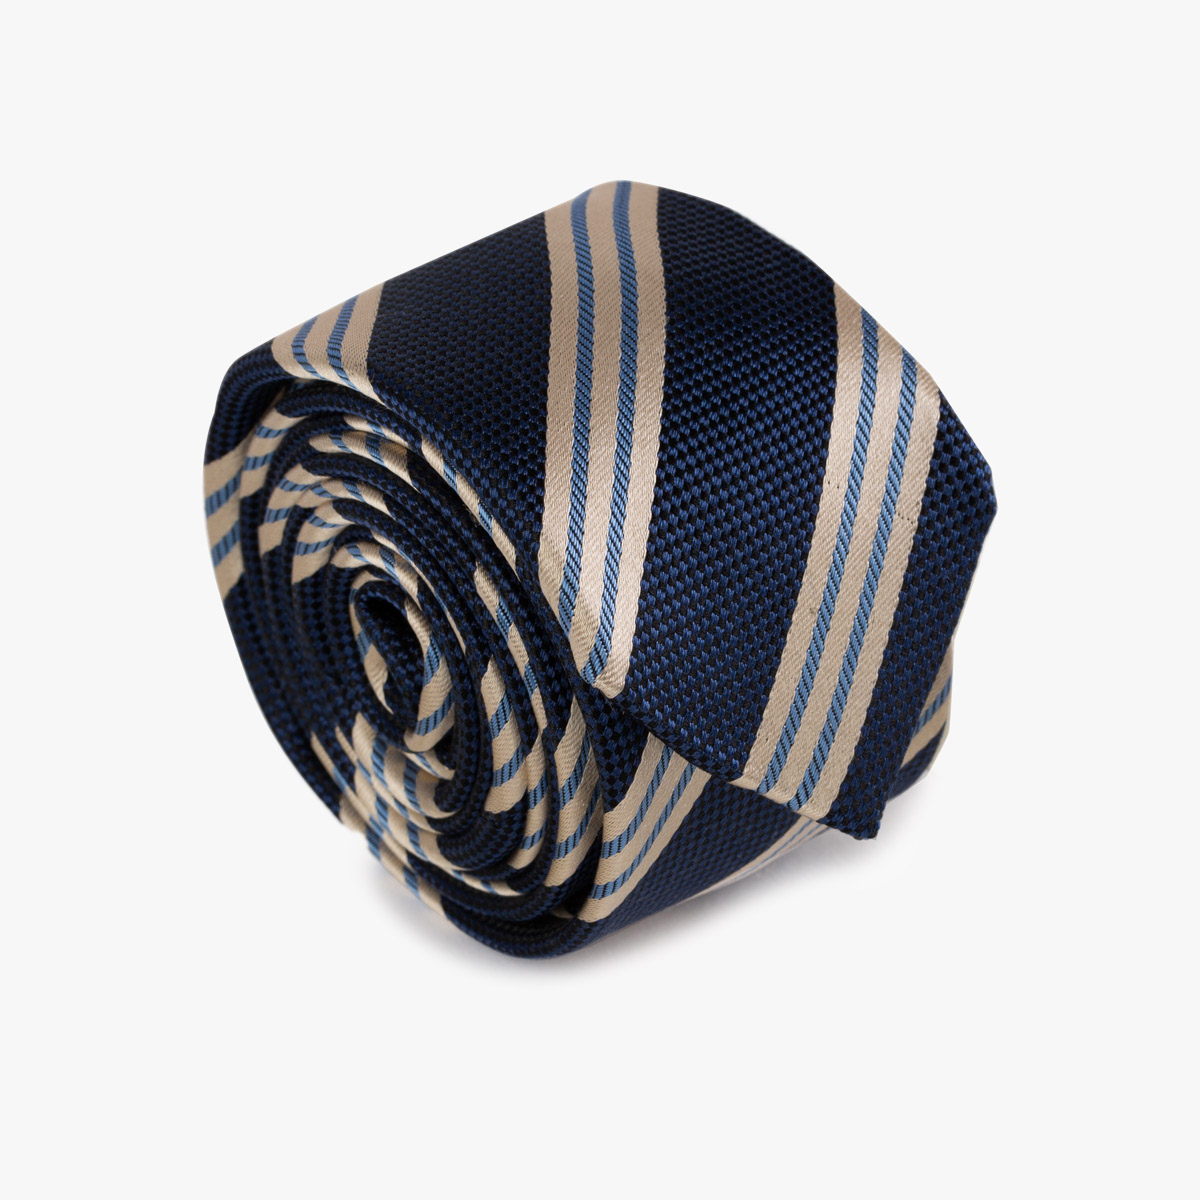 Aufgerollte schmale Krawatte in dunkelblau und ecru mit diagonalen Streifen